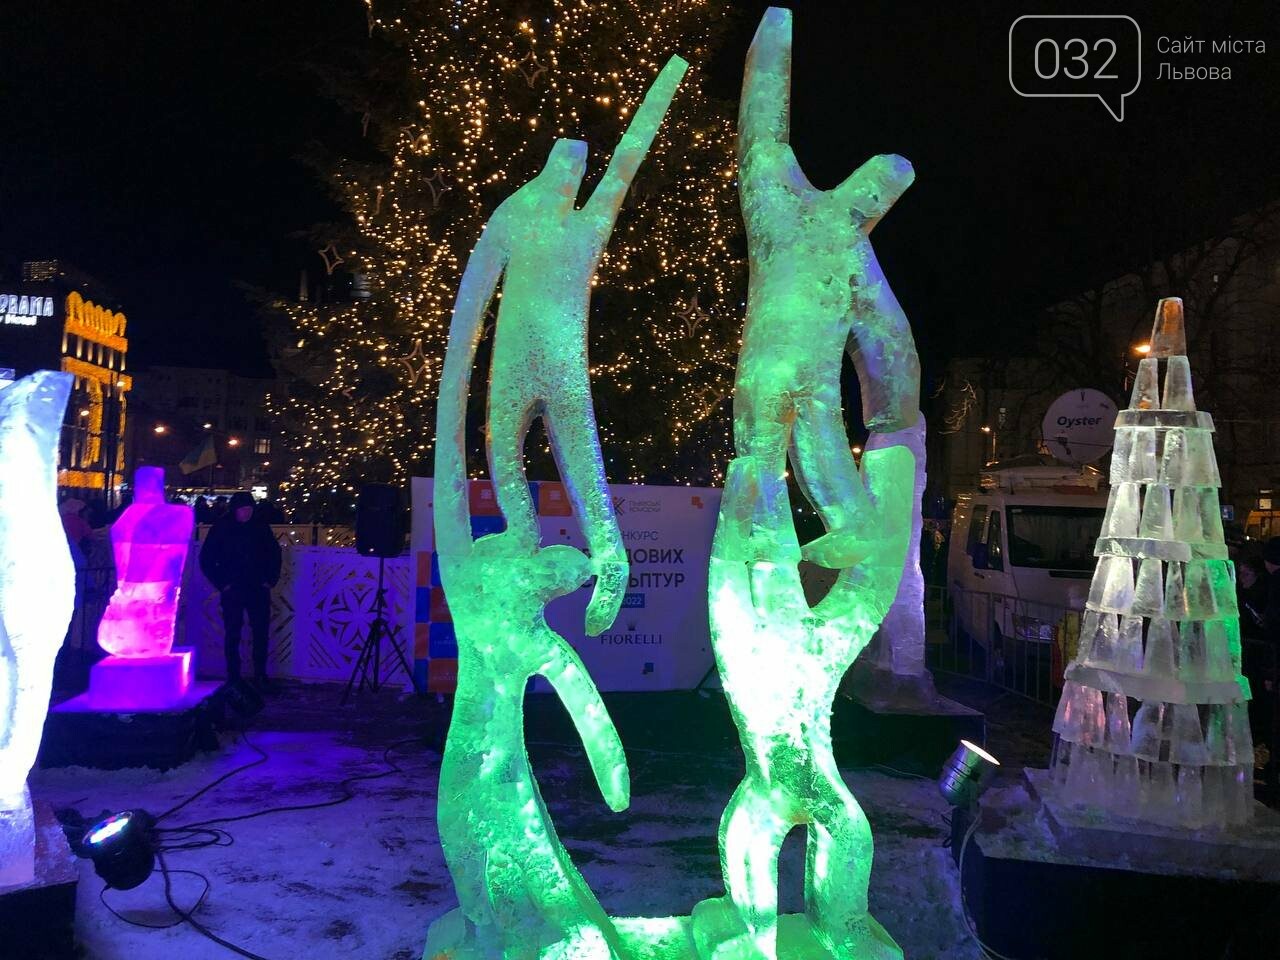 Конкурс льодових скульптур у Львові